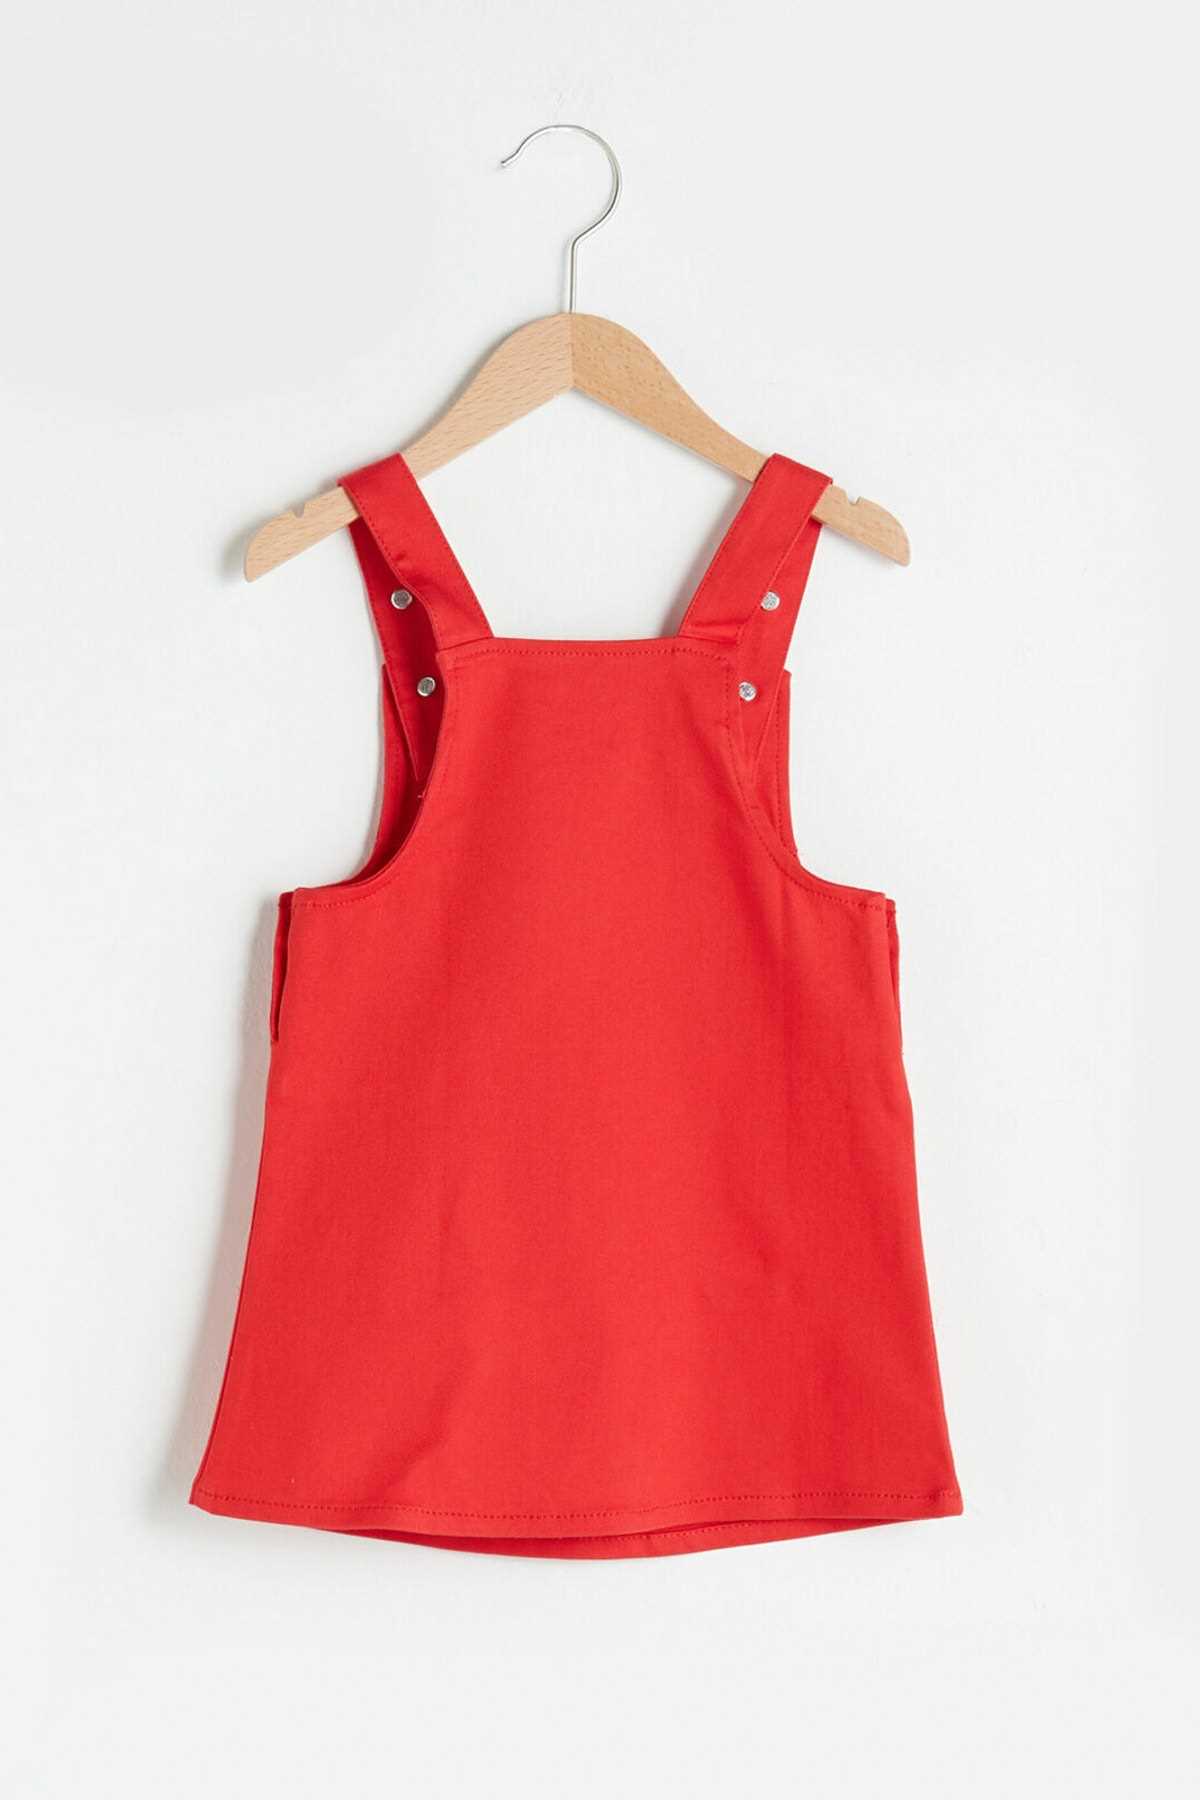 سفارش لباس مجلسی نوزاد دخترانه ارزان برند ال سی وایکیکی رنگ قرمز TY96453494